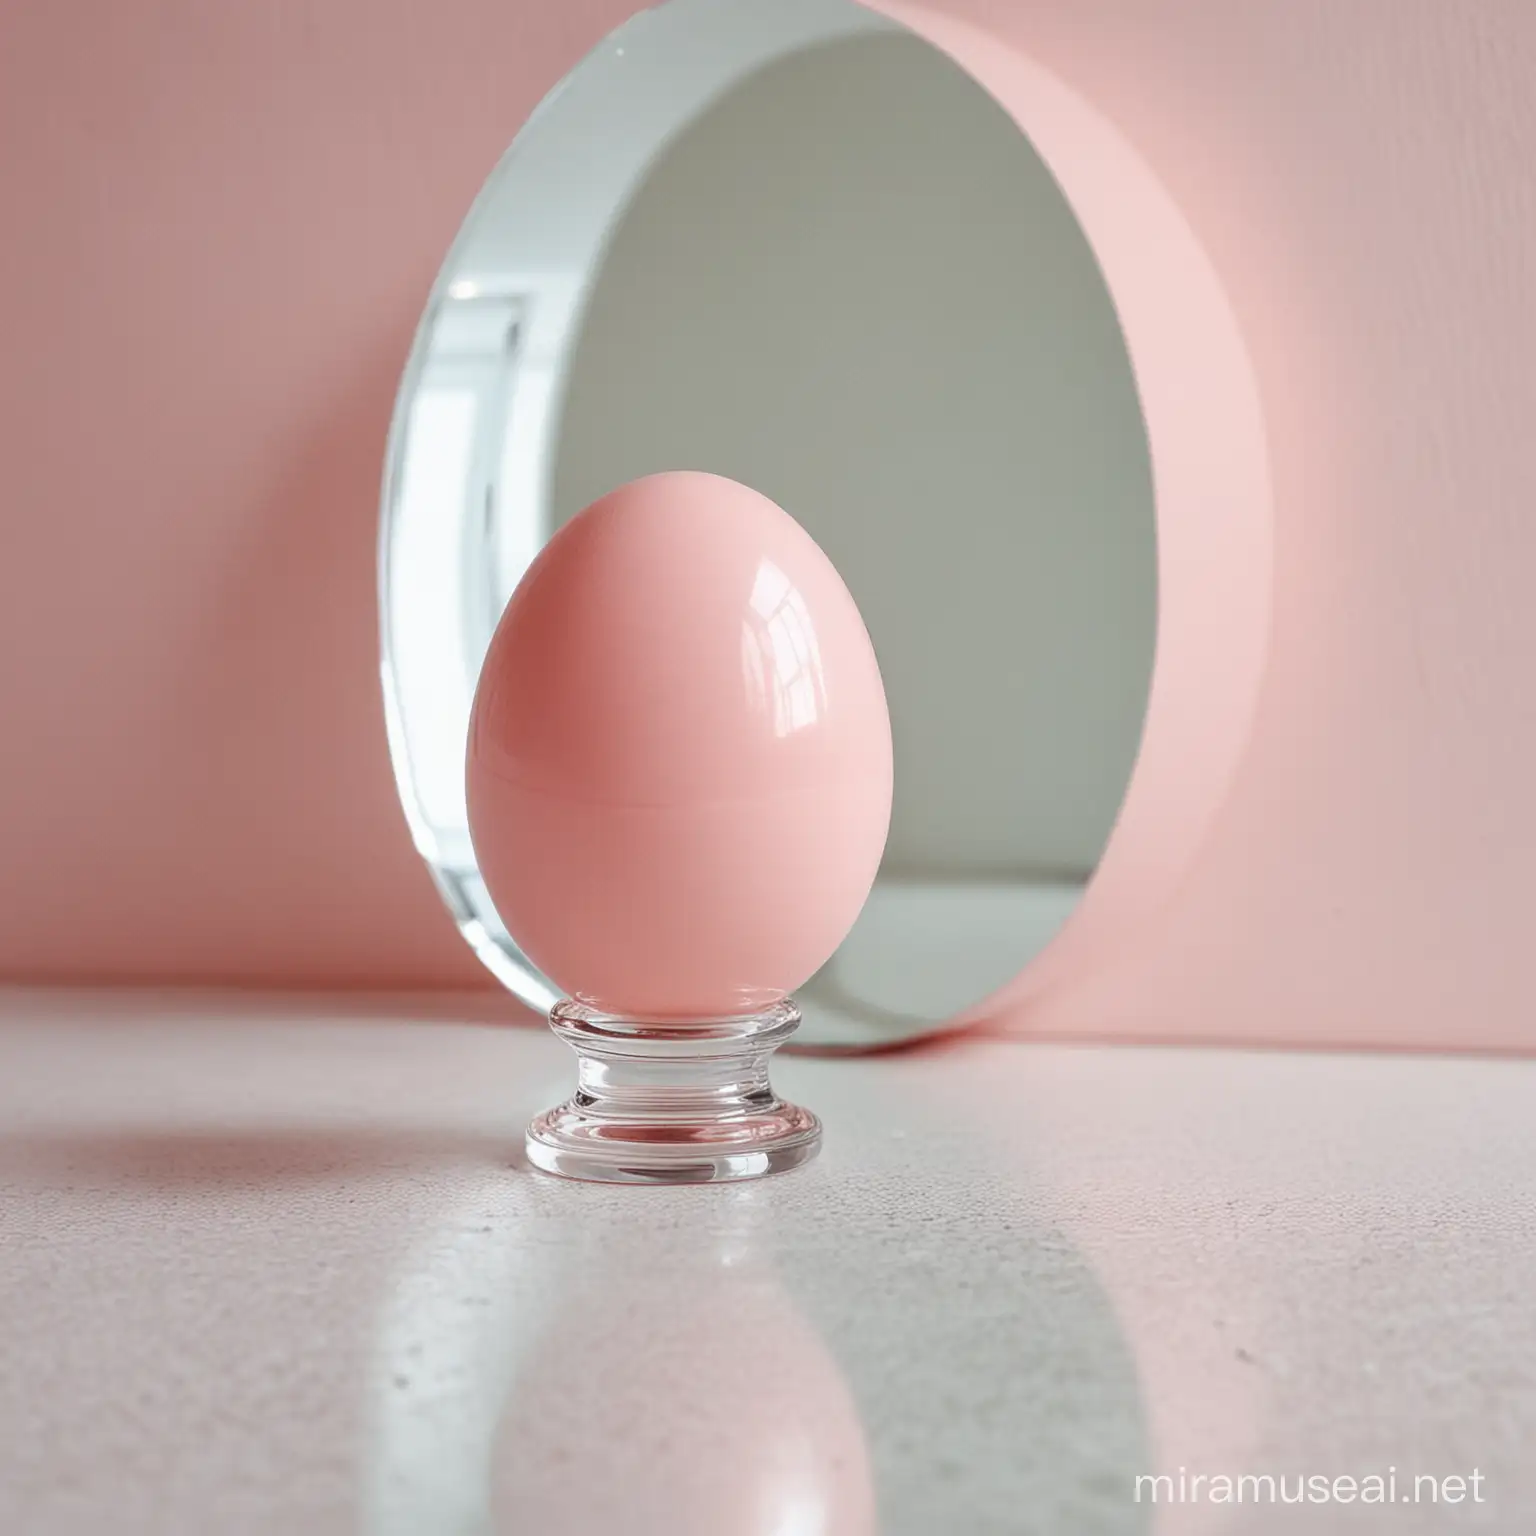 Œuf rose pâle se reflétant dans un miroir 